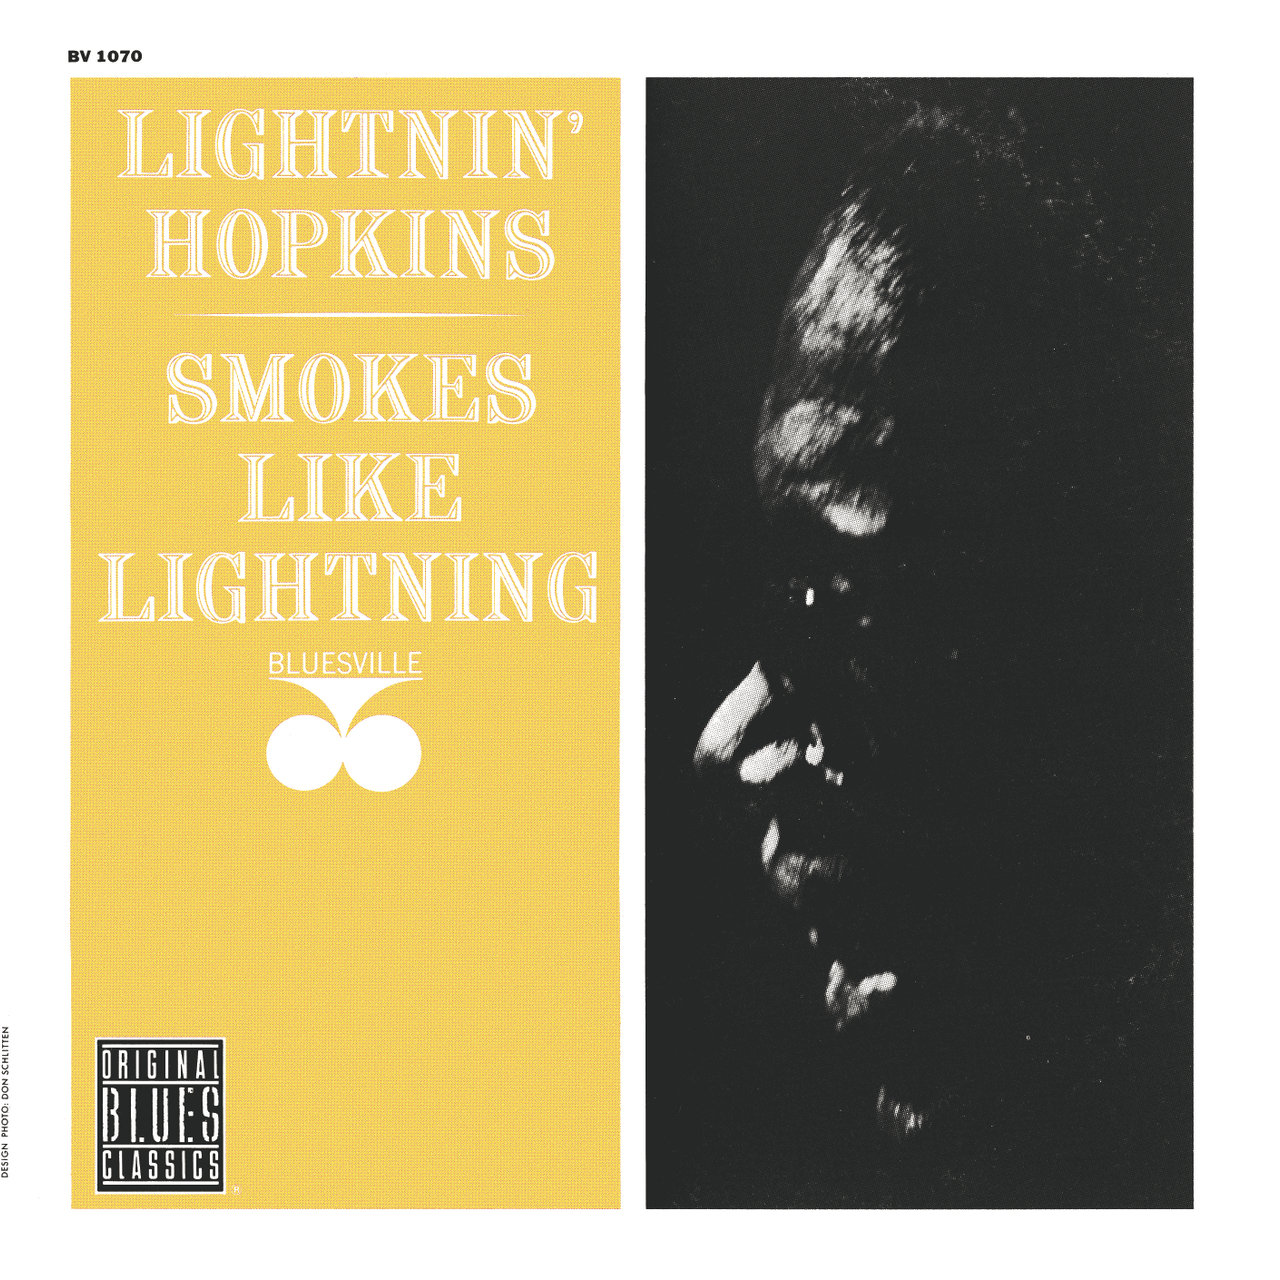 Smokes Like Lightnin’ [1963]